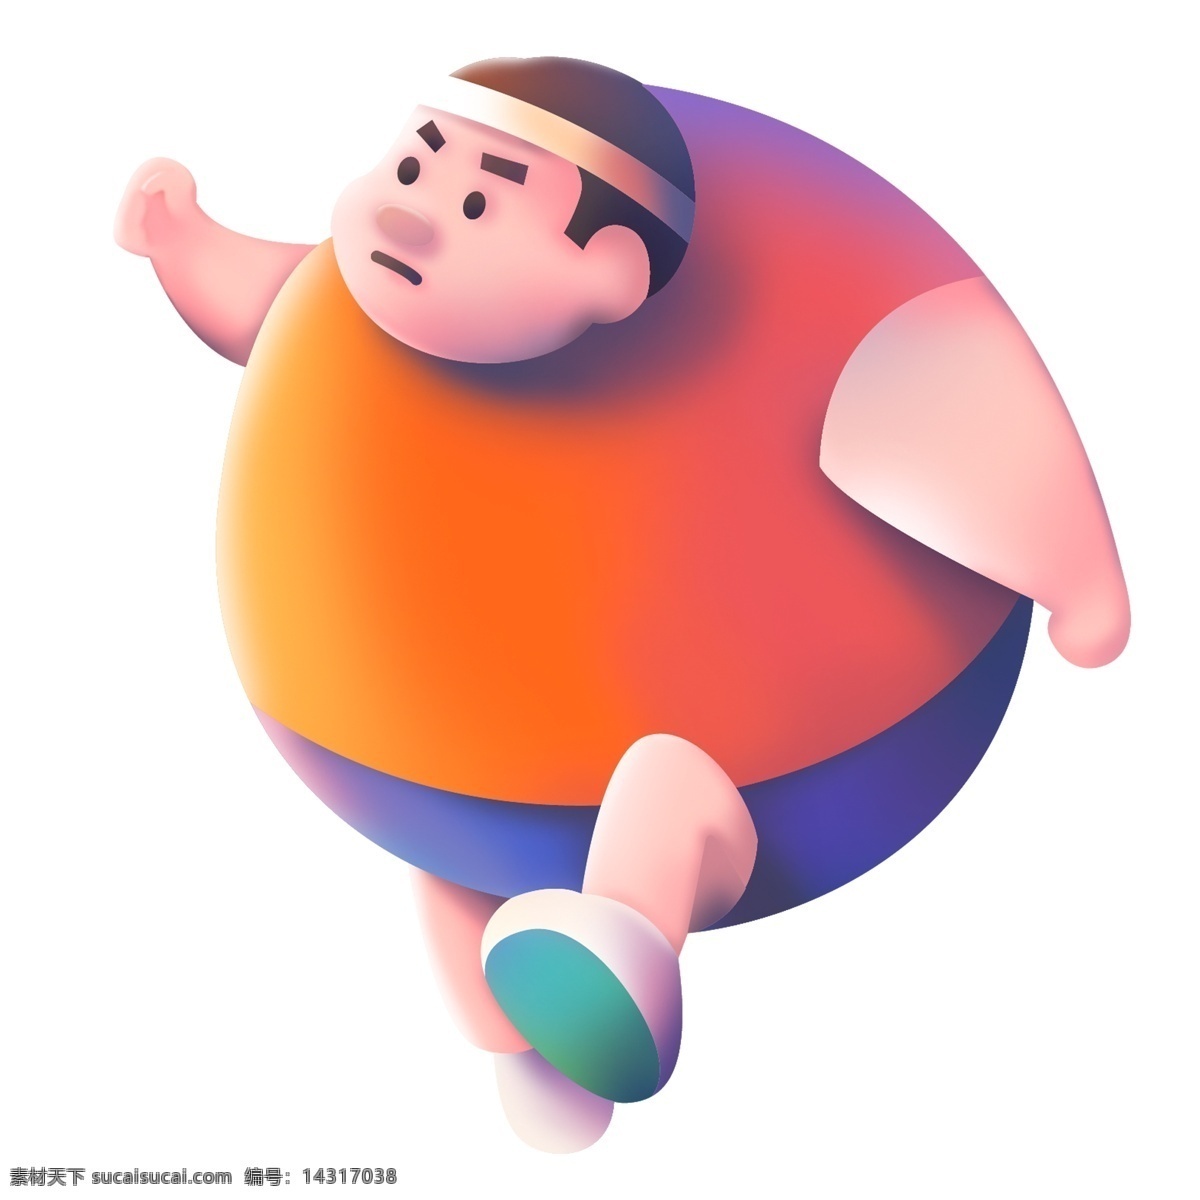 打羽毛球的胖子图片素材免费下载 - 觅知网